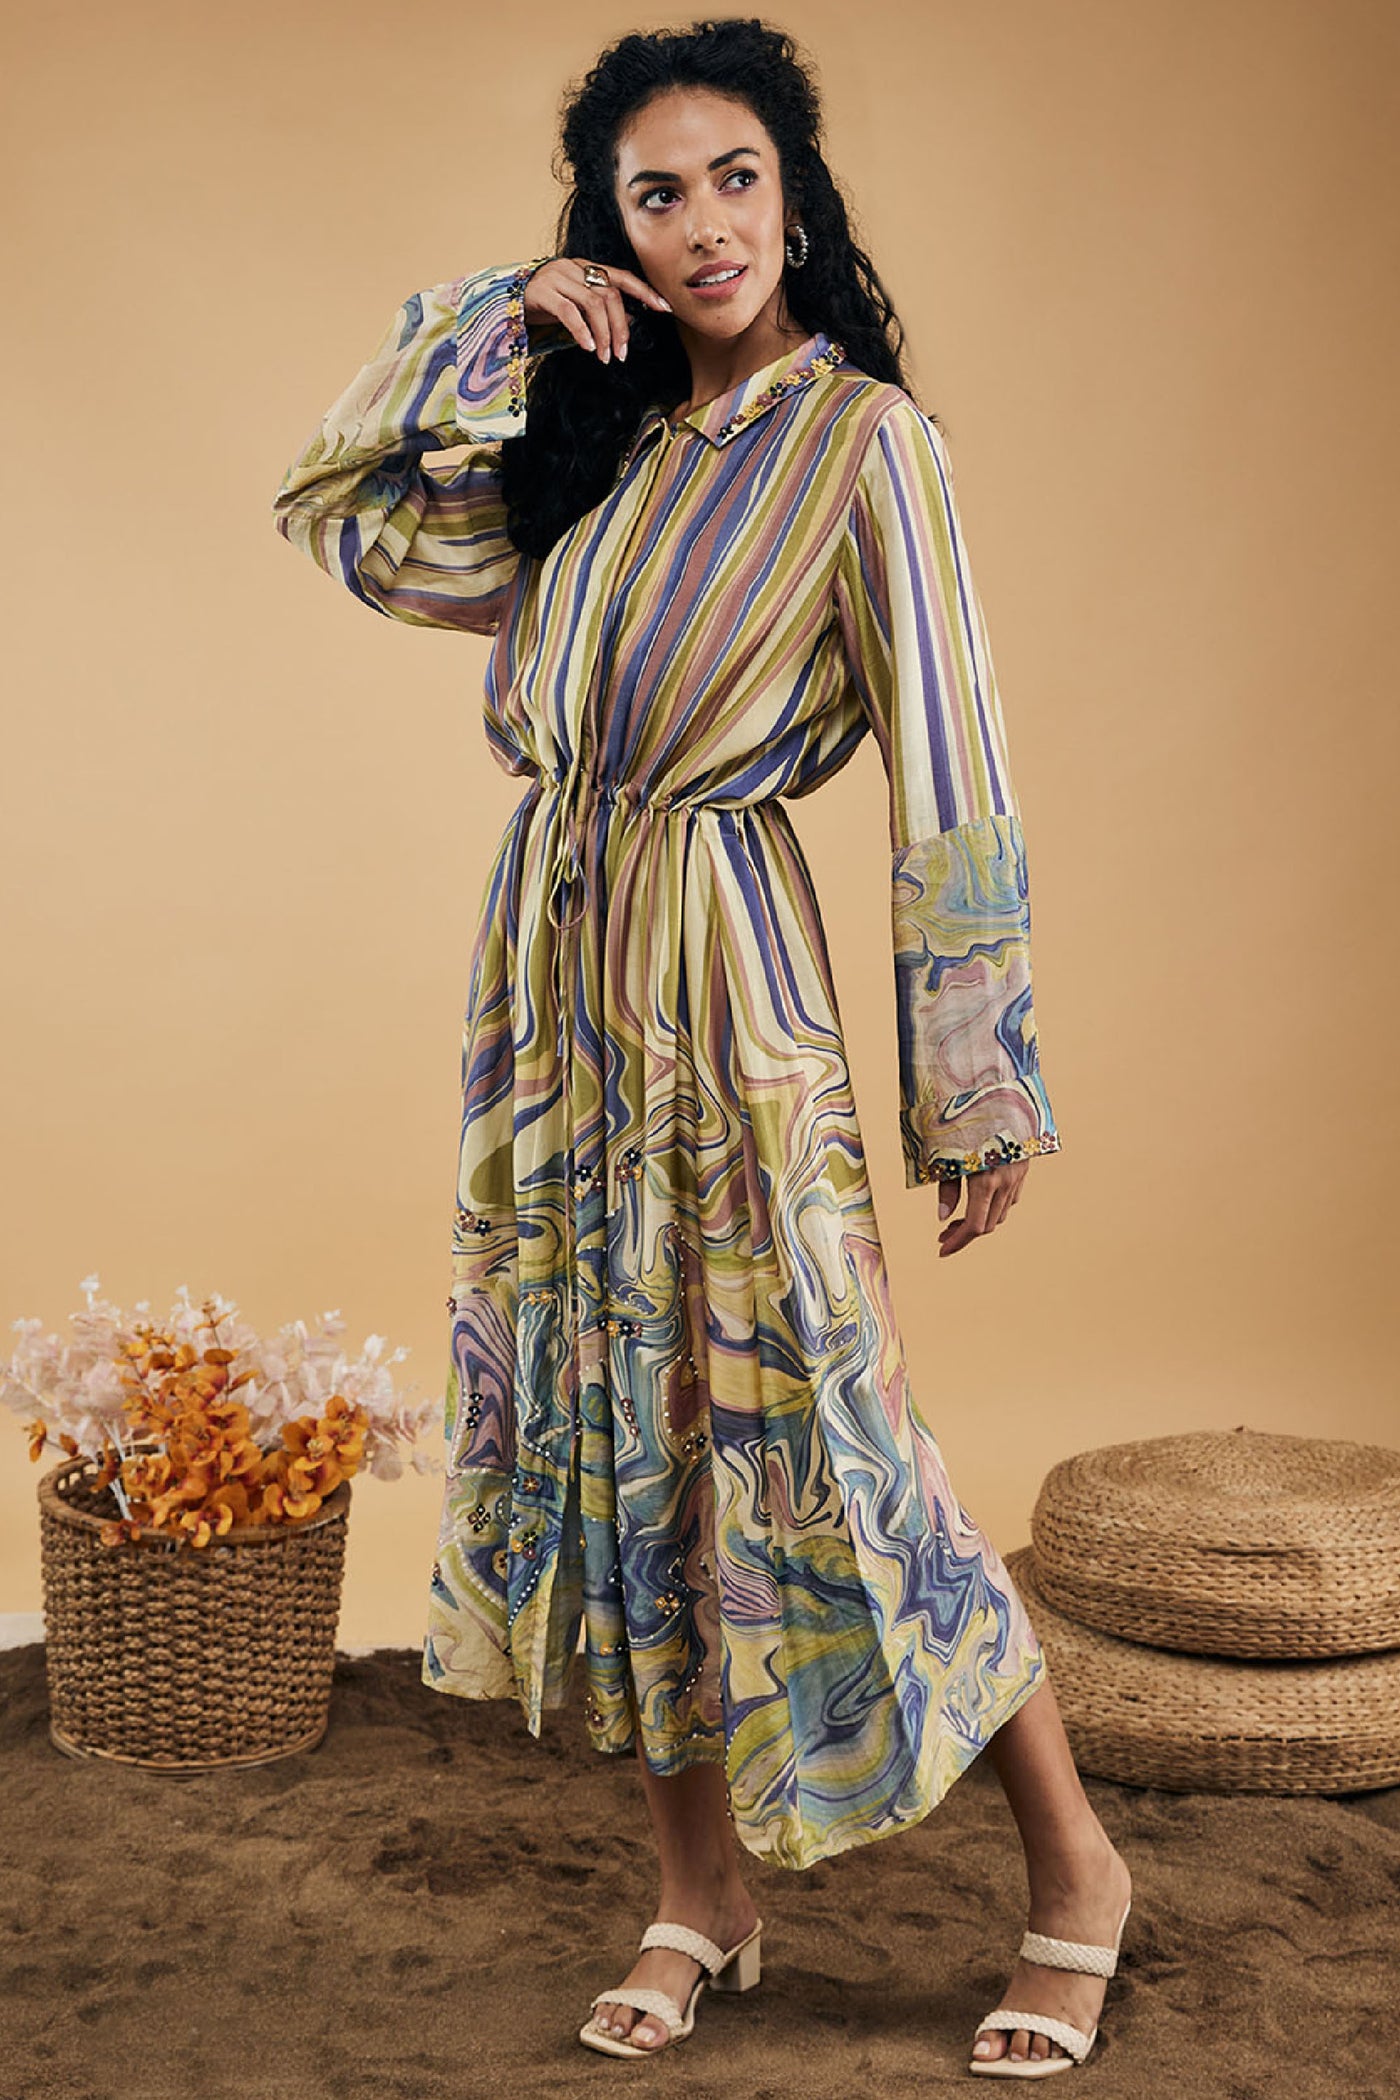 Sougat Paul Marble Mosaic Printed Long Dress indian designer wear online shopping melange singapore